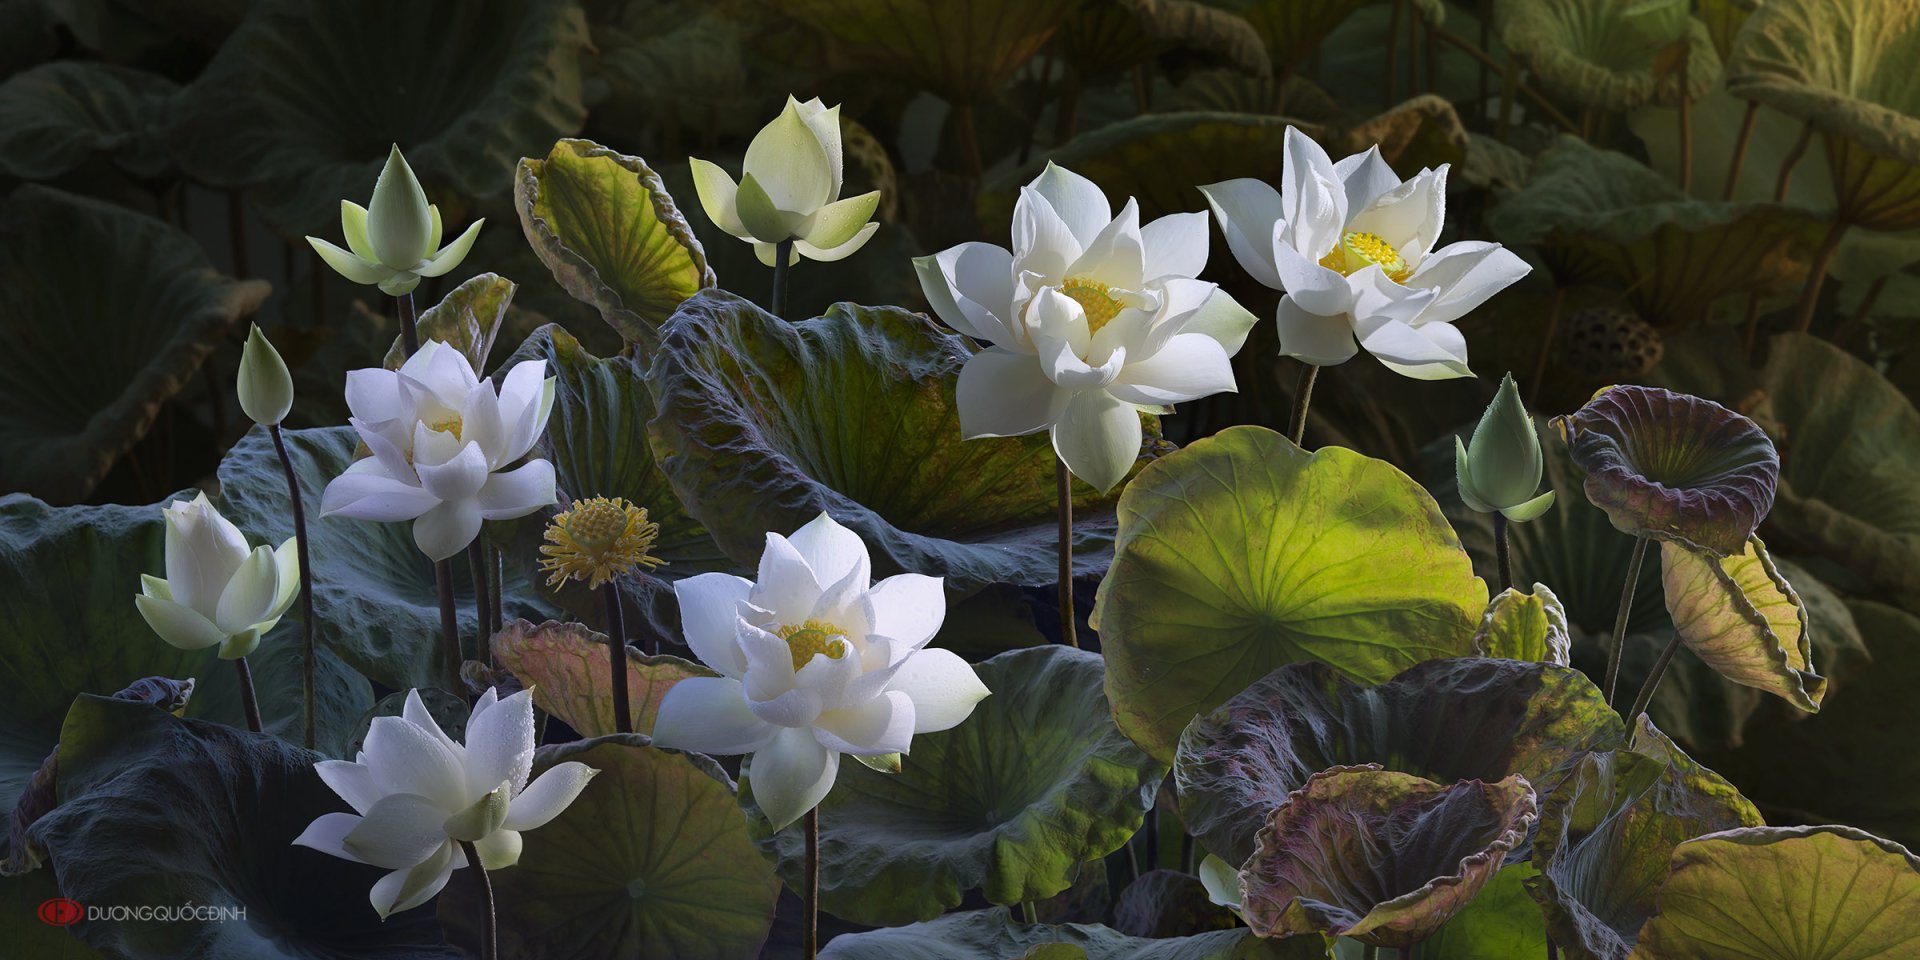 Hoa sen trắng là biểu tượng của sự thanh nhã và tịnh tưởng trong văn hóa Việt Nam. Hãy chiêm ngưỡng hình ảnh về hoa sen trắng để cảm nhận được sự tinh khôi và thanh khiết của nó.